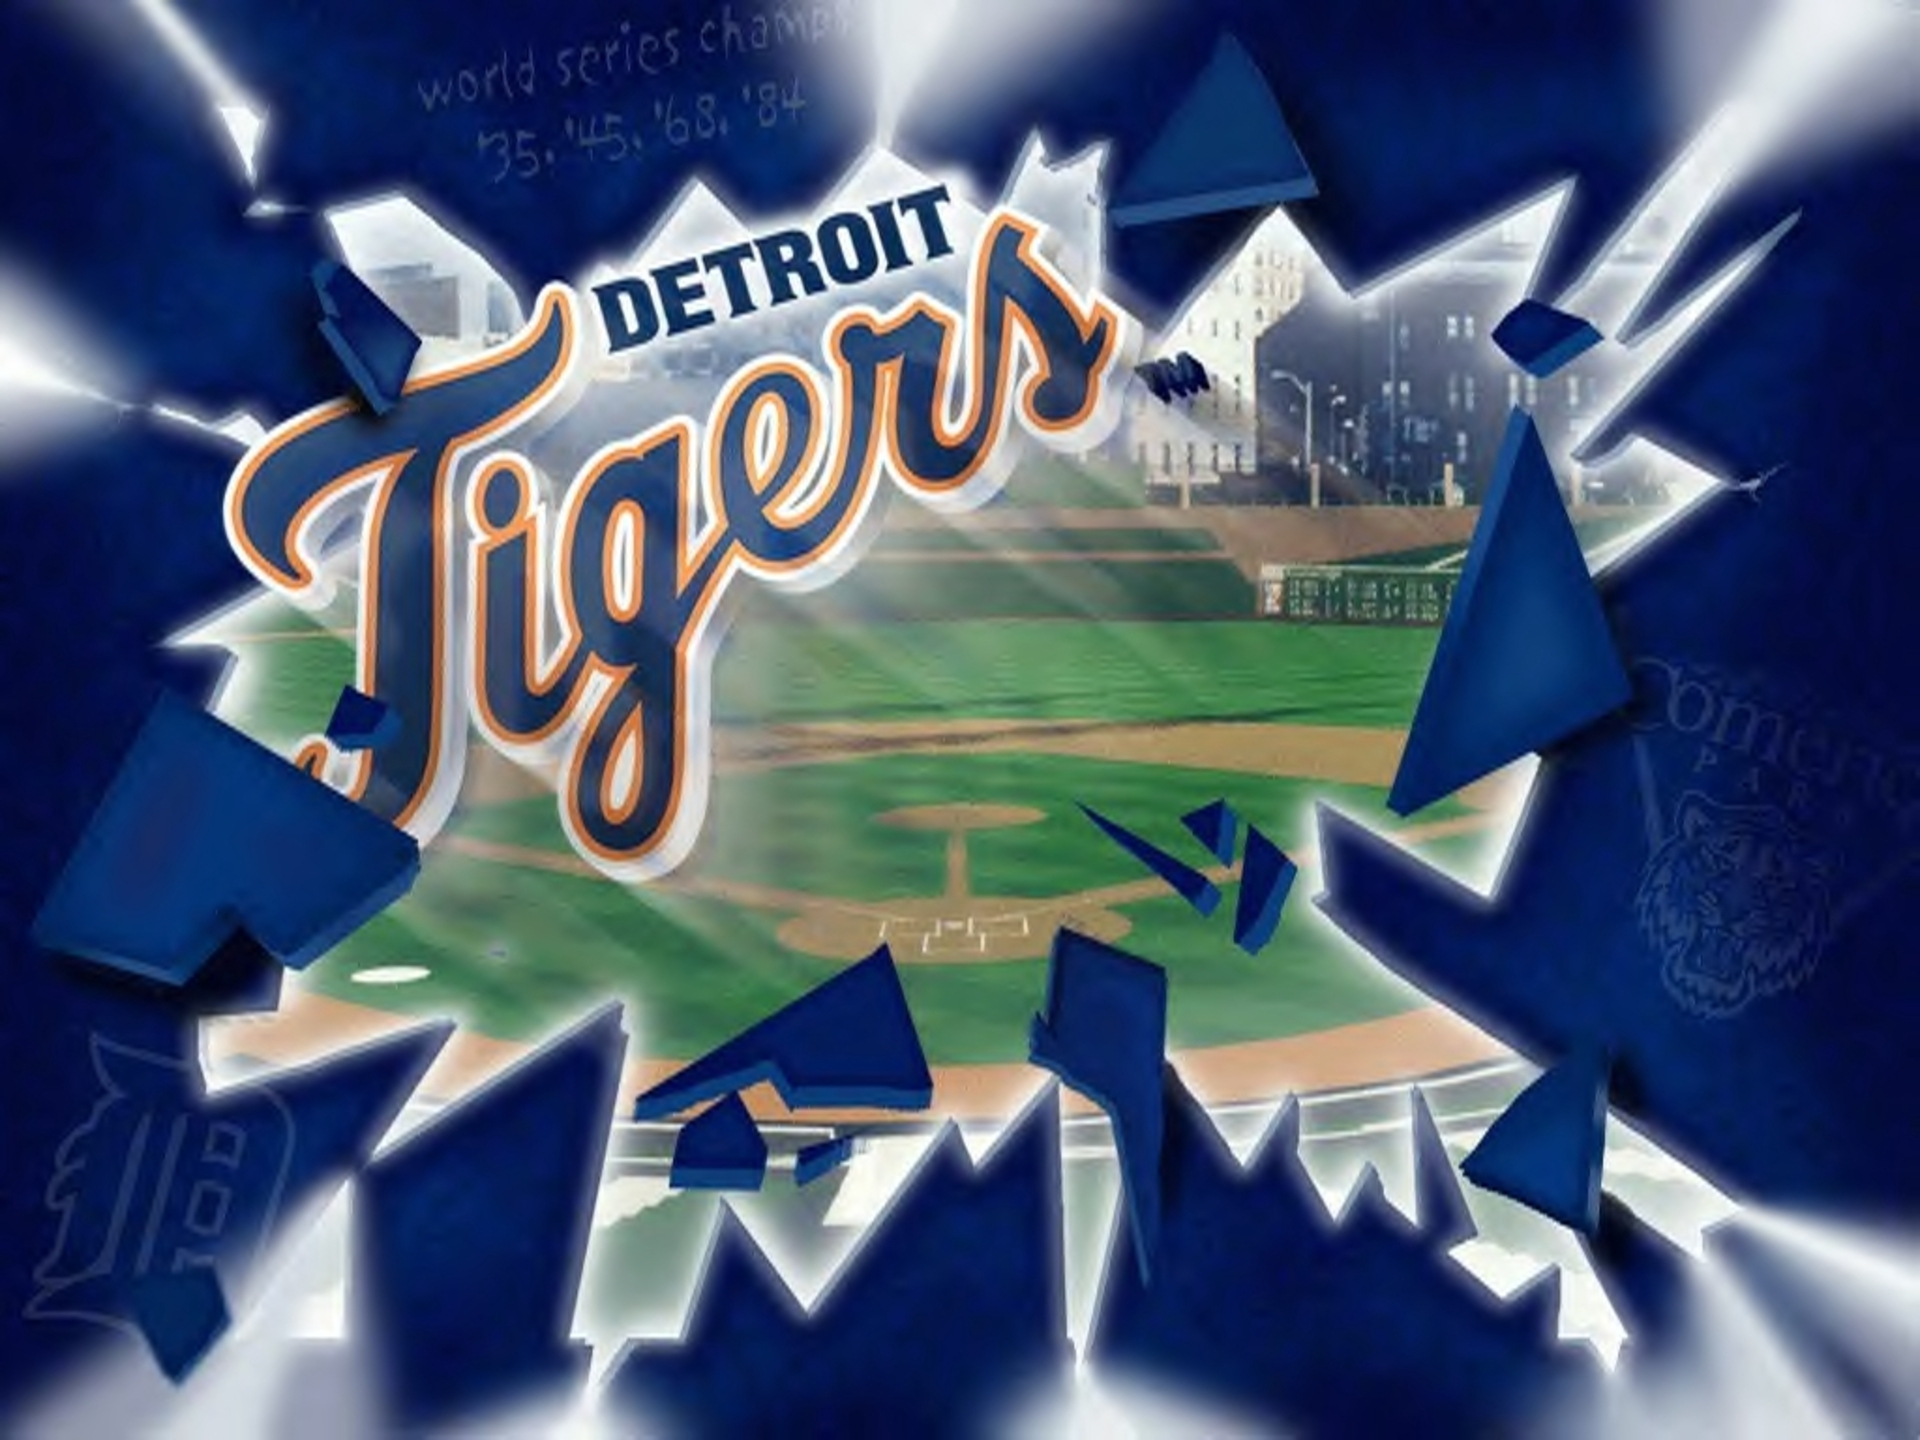 69+] Detroit Tigers Wallpapers - WallpaperSafari